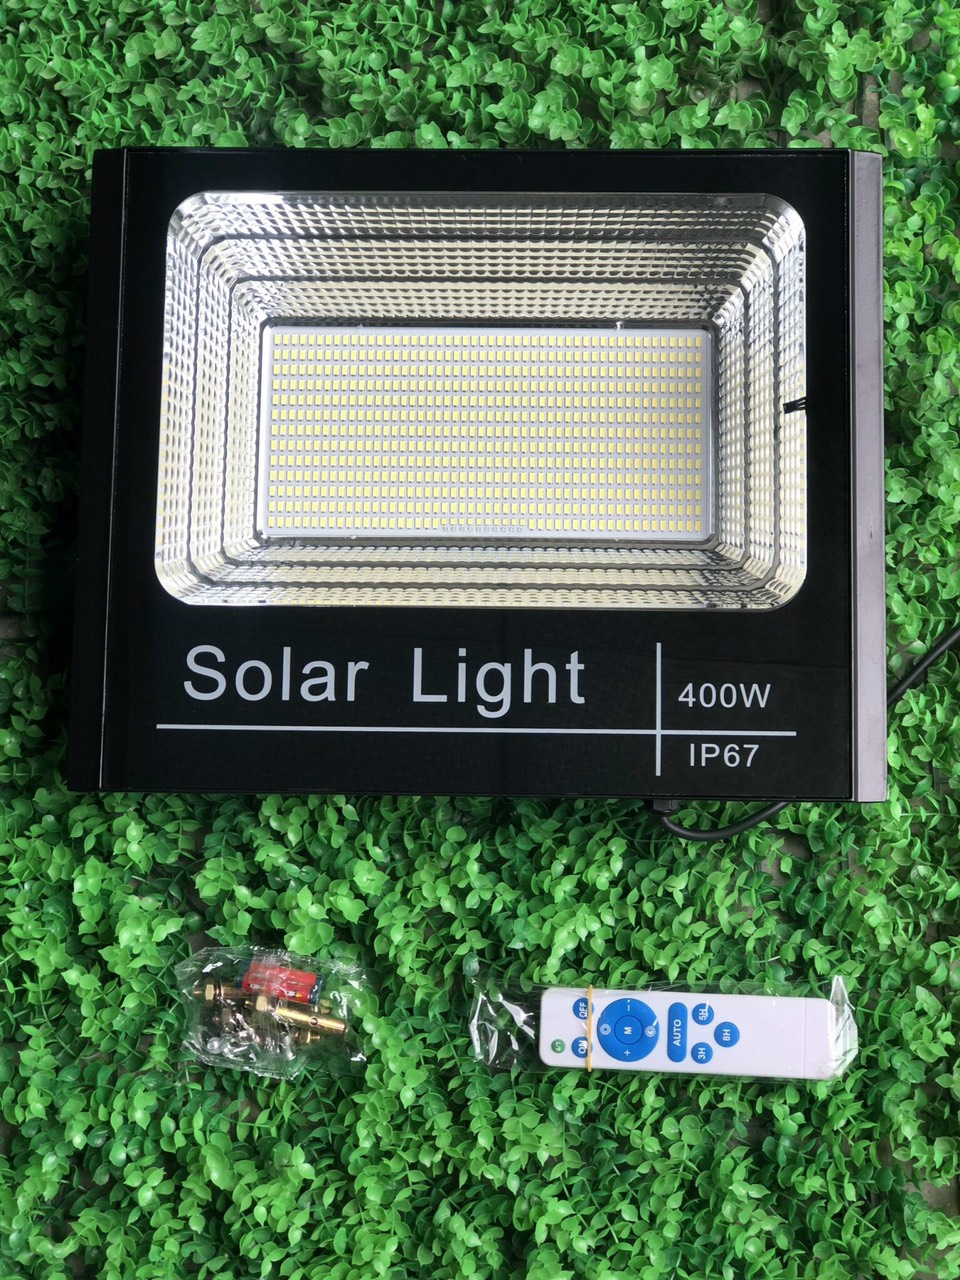 Đèn pha năng lượng mặt trời, đèn led năng lượng ,400w, mẫu công trình 912 led 5730